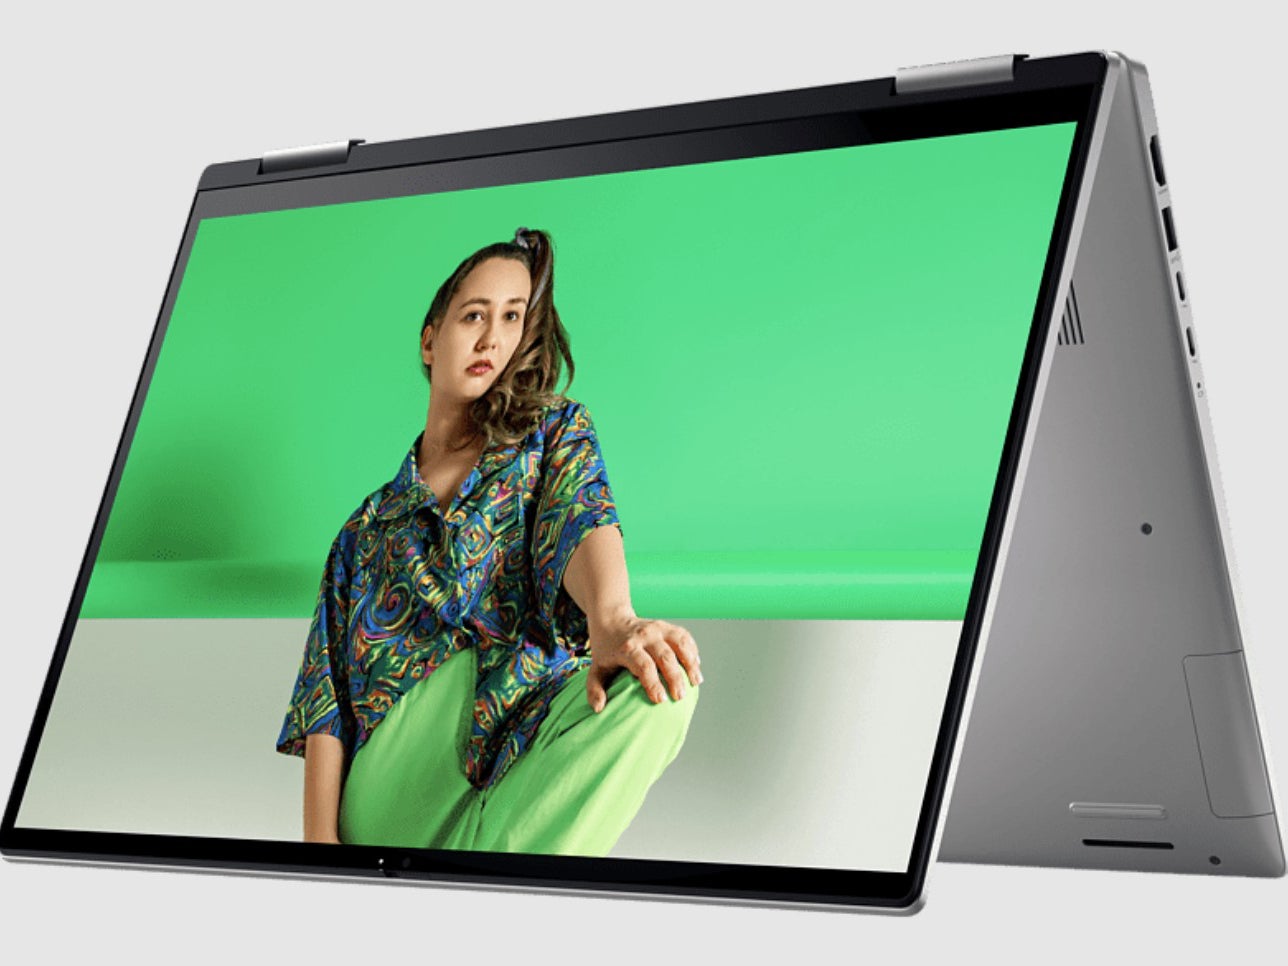 mit i7 und GB RAM für 699 €: MediaMarkt schmeißt Laptops raus